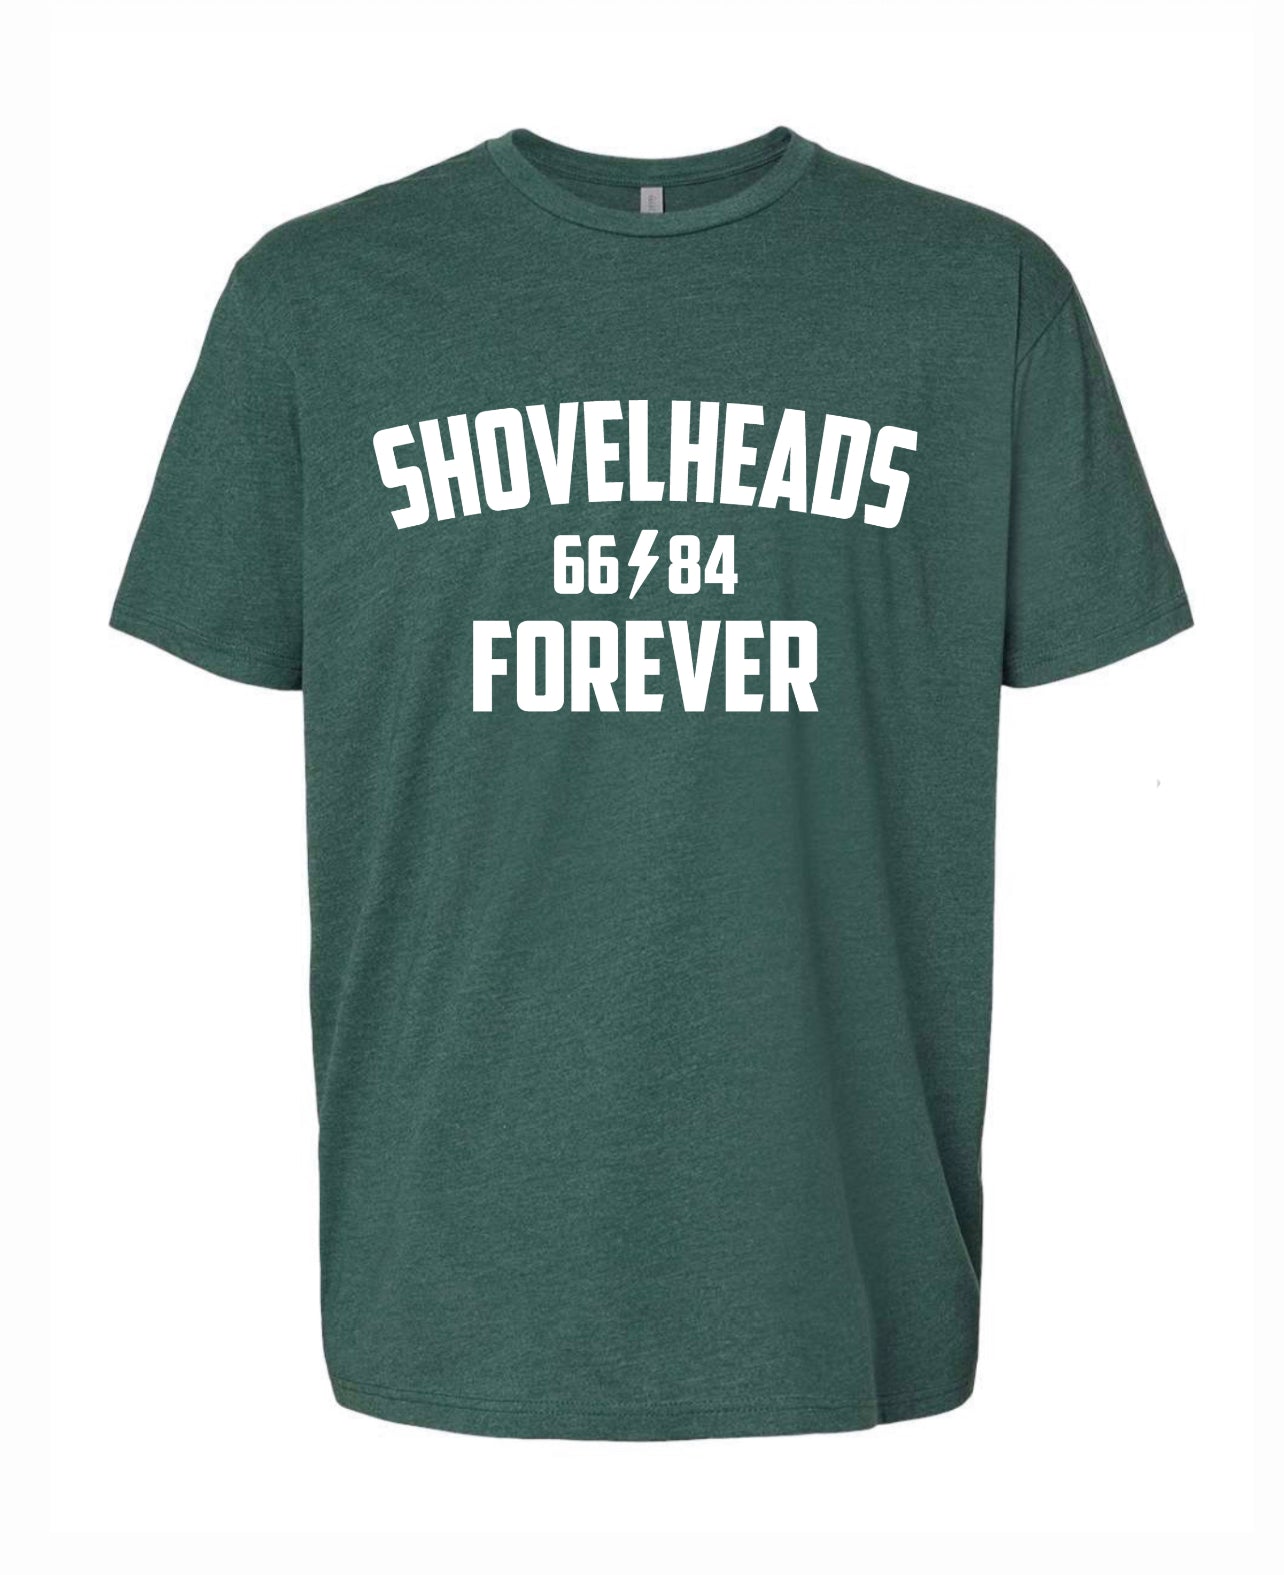 Shovelheads Forever